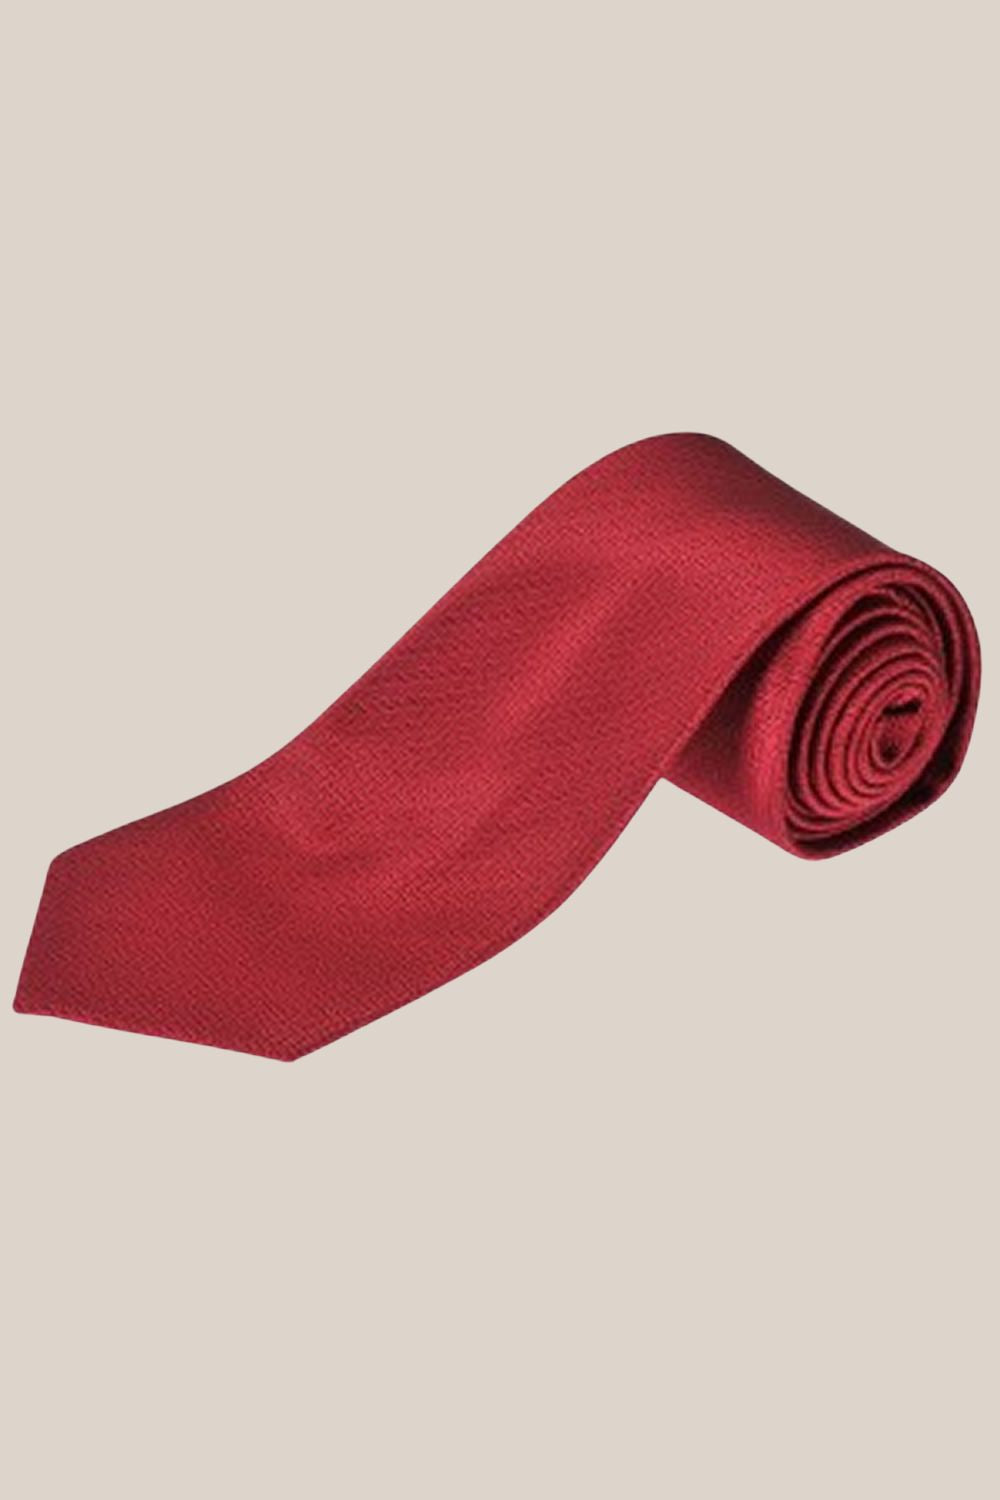 Formalaties Herringbone Tie